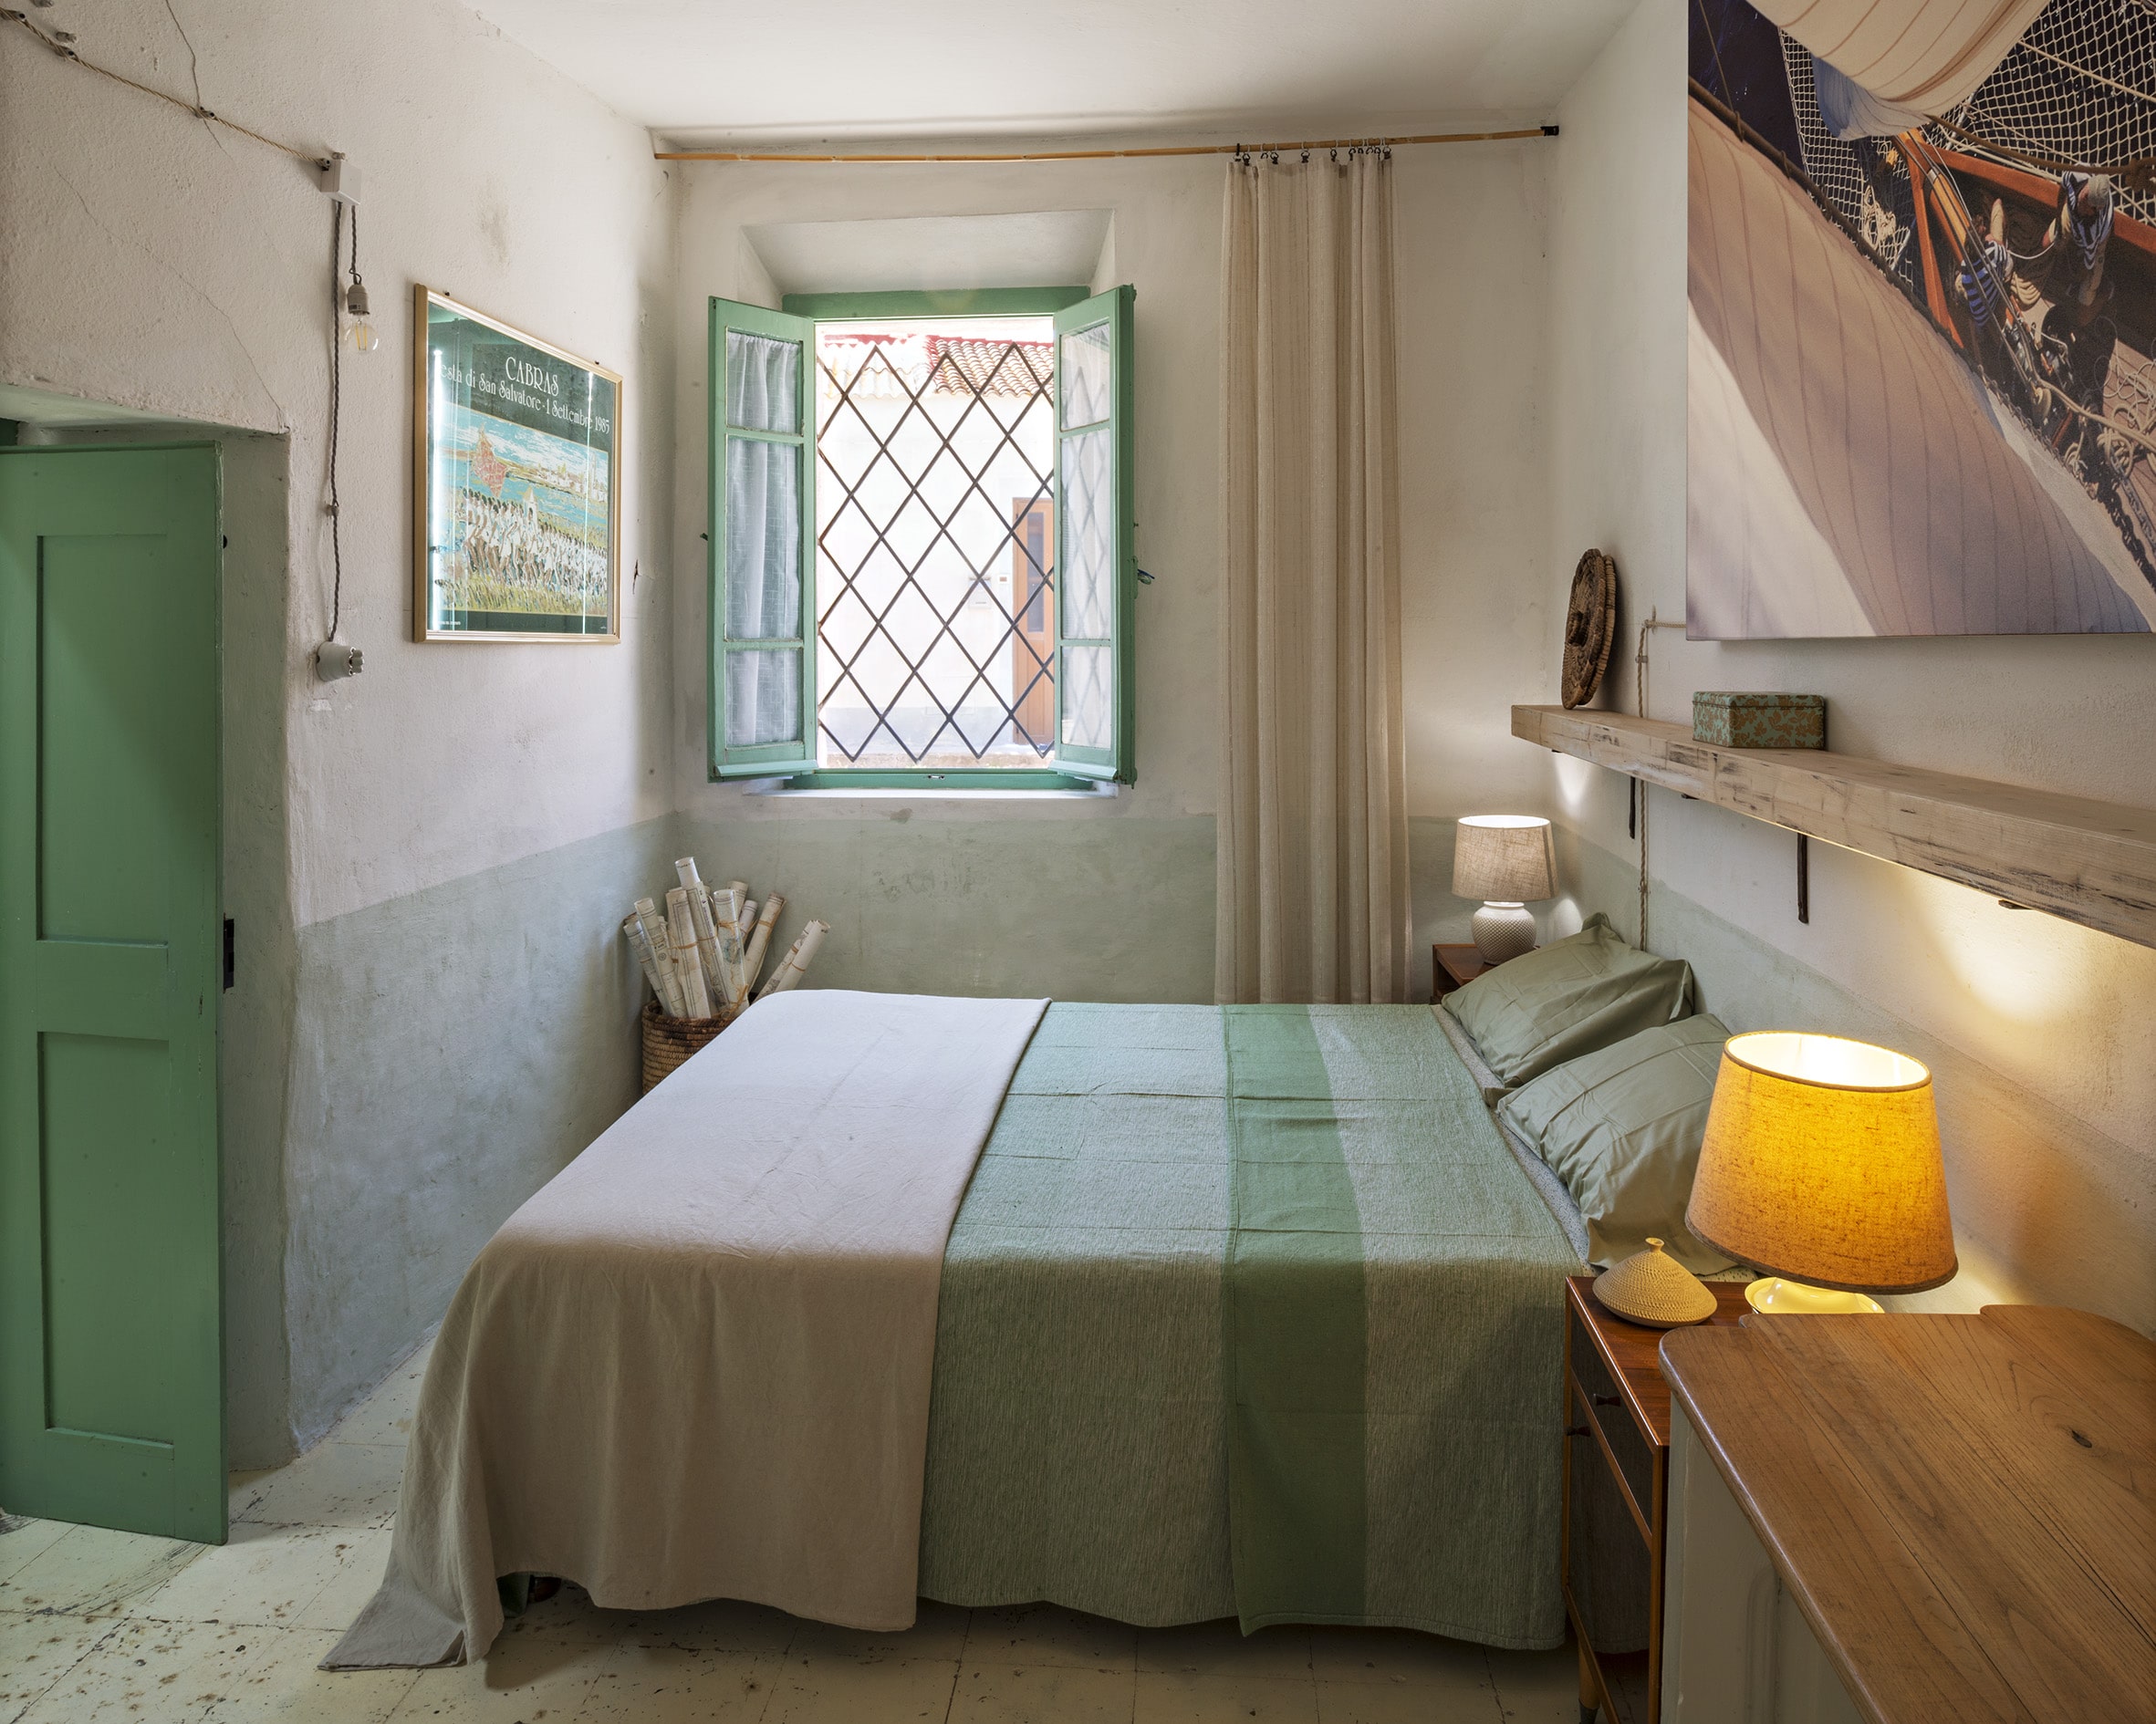 Letto della Camera Trinchetta, Limolo House, bed and breakfast a Cabras ed Eco Hotel in Sardegna - Bioarchitettura a Cabras, soggiorno sostenibile in Sardegna